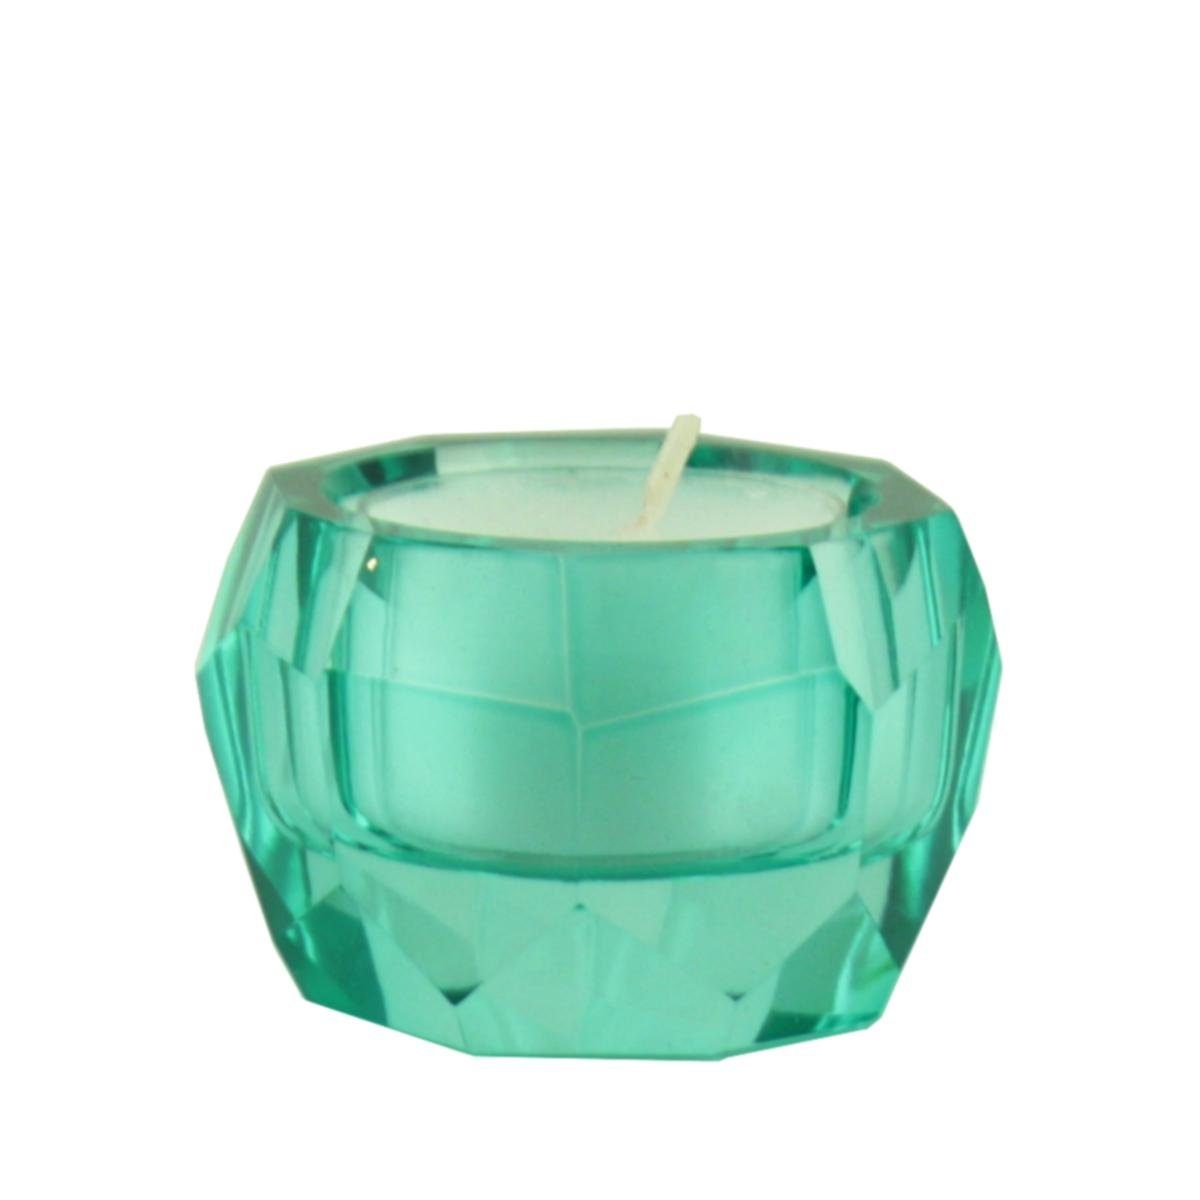 Giftcompany Teelichthalter Gift-Company Teelichthalter Kristallglas lichtgrün ca 4 cm H (Stück) | Teelichthalter